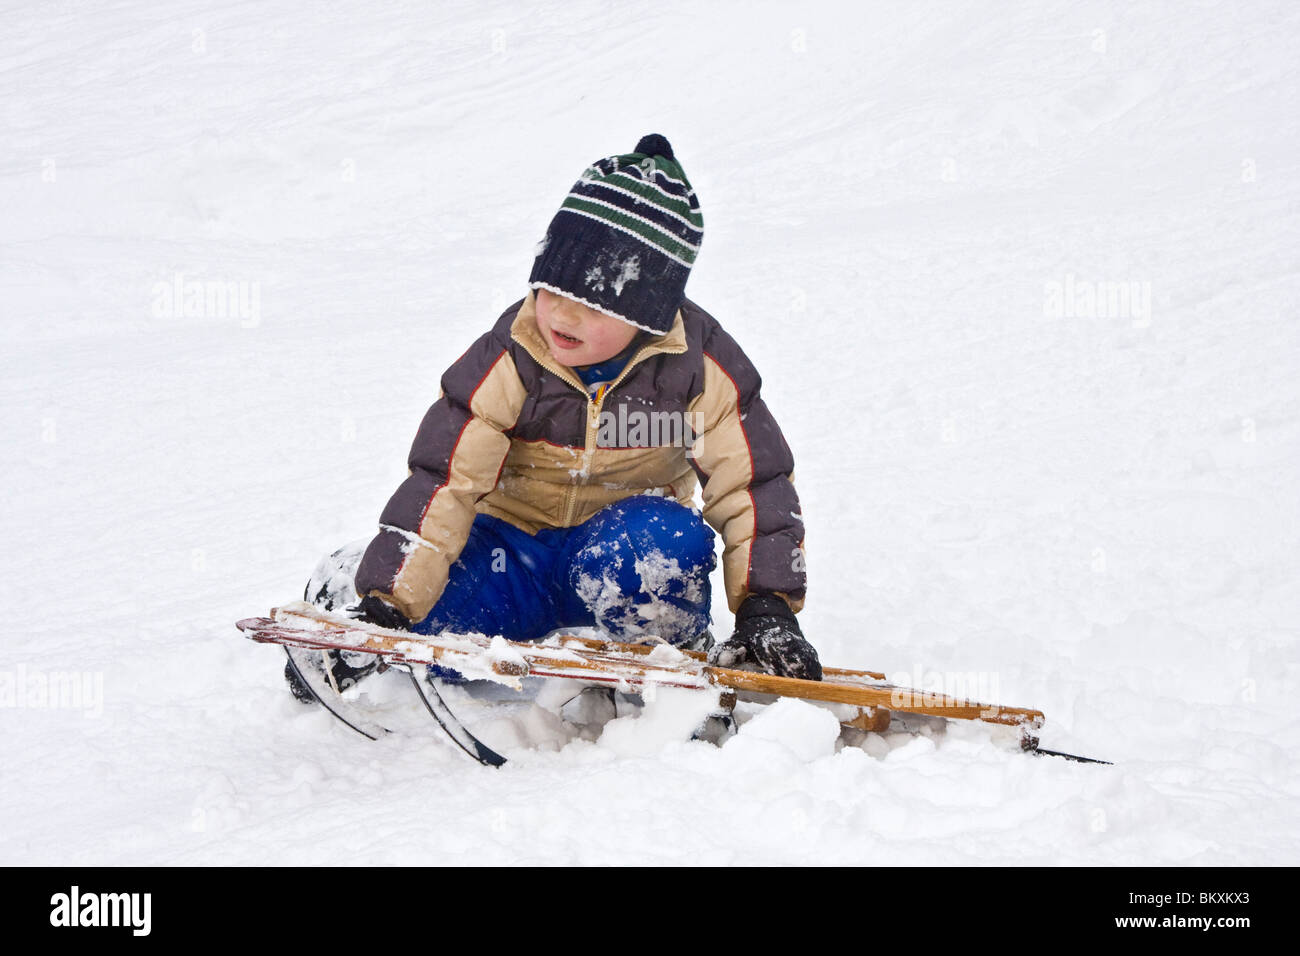 Les enfants en bas de pente courte de traîneau en hiver, South Lake Tahoe, California, USA. Ici un garçon choisit lui-même après un crash. Banque D'Images